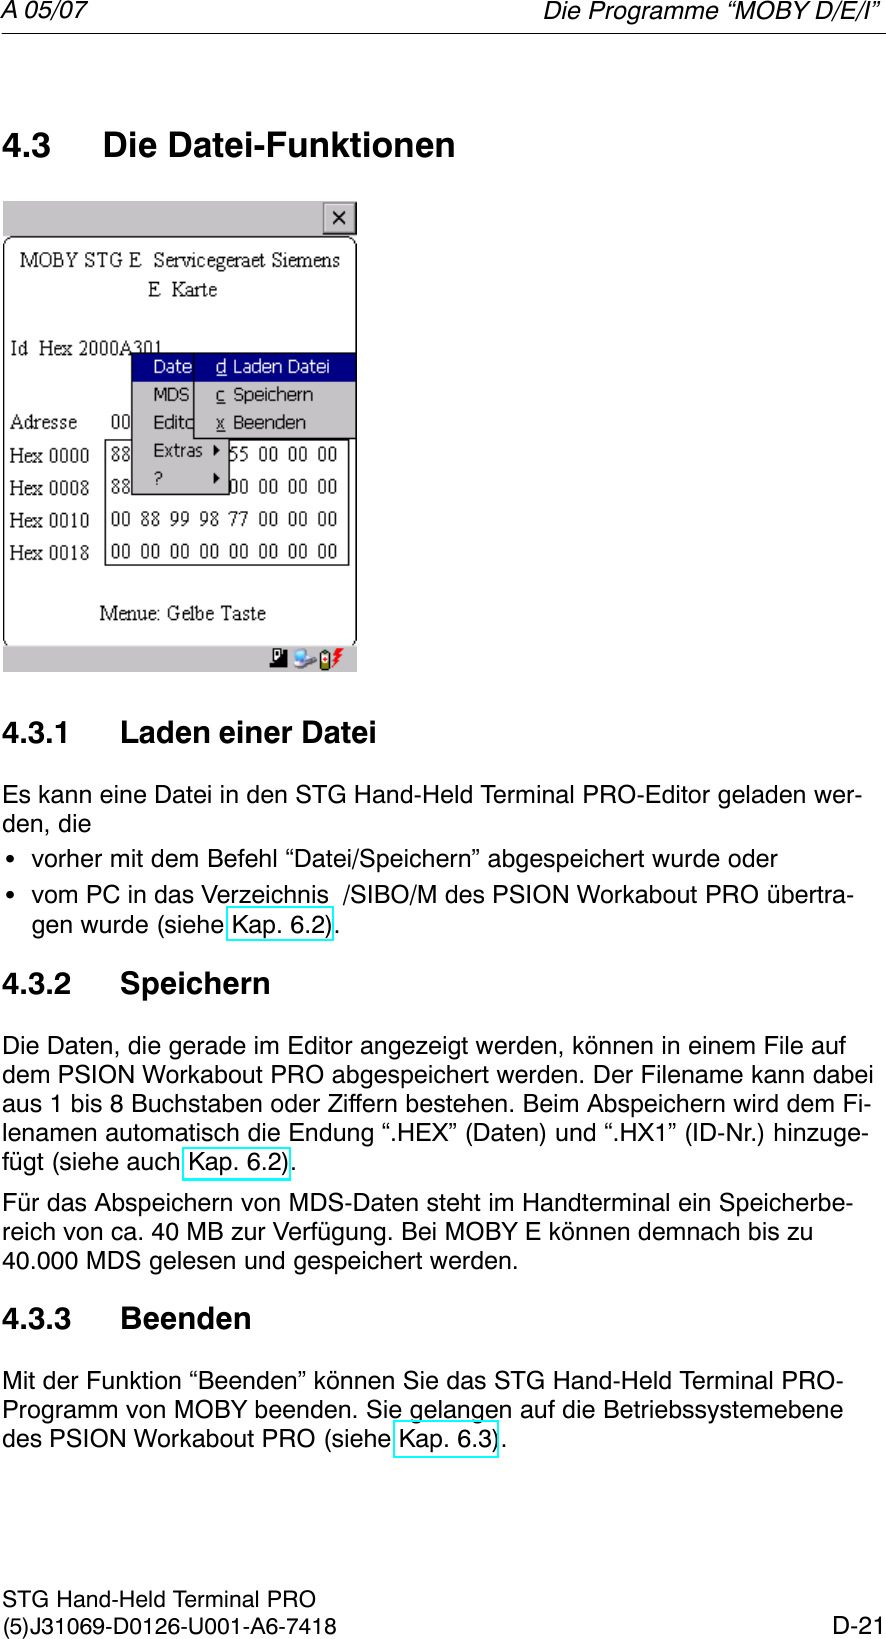 A 05/07D-21STG Hand-Held Terminal PRO(5)J31069-D0126-U001-A6-74184.3 Die Datei-Funktionen4.3.1 Laden einer DateiEs kann eine Datei in den STG Hand-Held Terminal PRO-Editor geladen wer-den, dieSvorher mit dem Befehl “Datei/Speichern” abgespeichert wurde oderSvom PC in das Verzeichnis  /SIBO/M des PSION Workabout PRO übertra-gen wurde (siehe Kap. 6.2).4.3.2 SpeichernDie Daten, die gerade im Editor angezeigt werden, können in einem File aufdem PSION Workabout PRO abgespeichert werden. Der Filename kann dabeiaus 1 bis 8 Buchstaben oder Ziffern bestehen. Beim Abspeichern wird dem Fi-lenamen automatisch die Endung “.HEX” (Daten) und “.HX1” (ID-Nr.) hinzuge-fügt (siehe auch Kap. 6.2).Für das Abspeichern von MDS-Daten steht im Handterminal ein Speicherbe-reich von ca. 40 MB zur Verfügung. Bei MOBY E können demnach bis zu40.000 MDS gelesen und gespeichert werden.4.3.3 BeendenMit der Funktion “Beenden” können Sie das STG Hand-Held Terminal PRO-Programm von MOBY beenden. Sie gelangen auf die Betriebssystemebenedes PSION Workabout PRO (siehe Kap. 6.3).Die Programme “MOBY D/E/I”